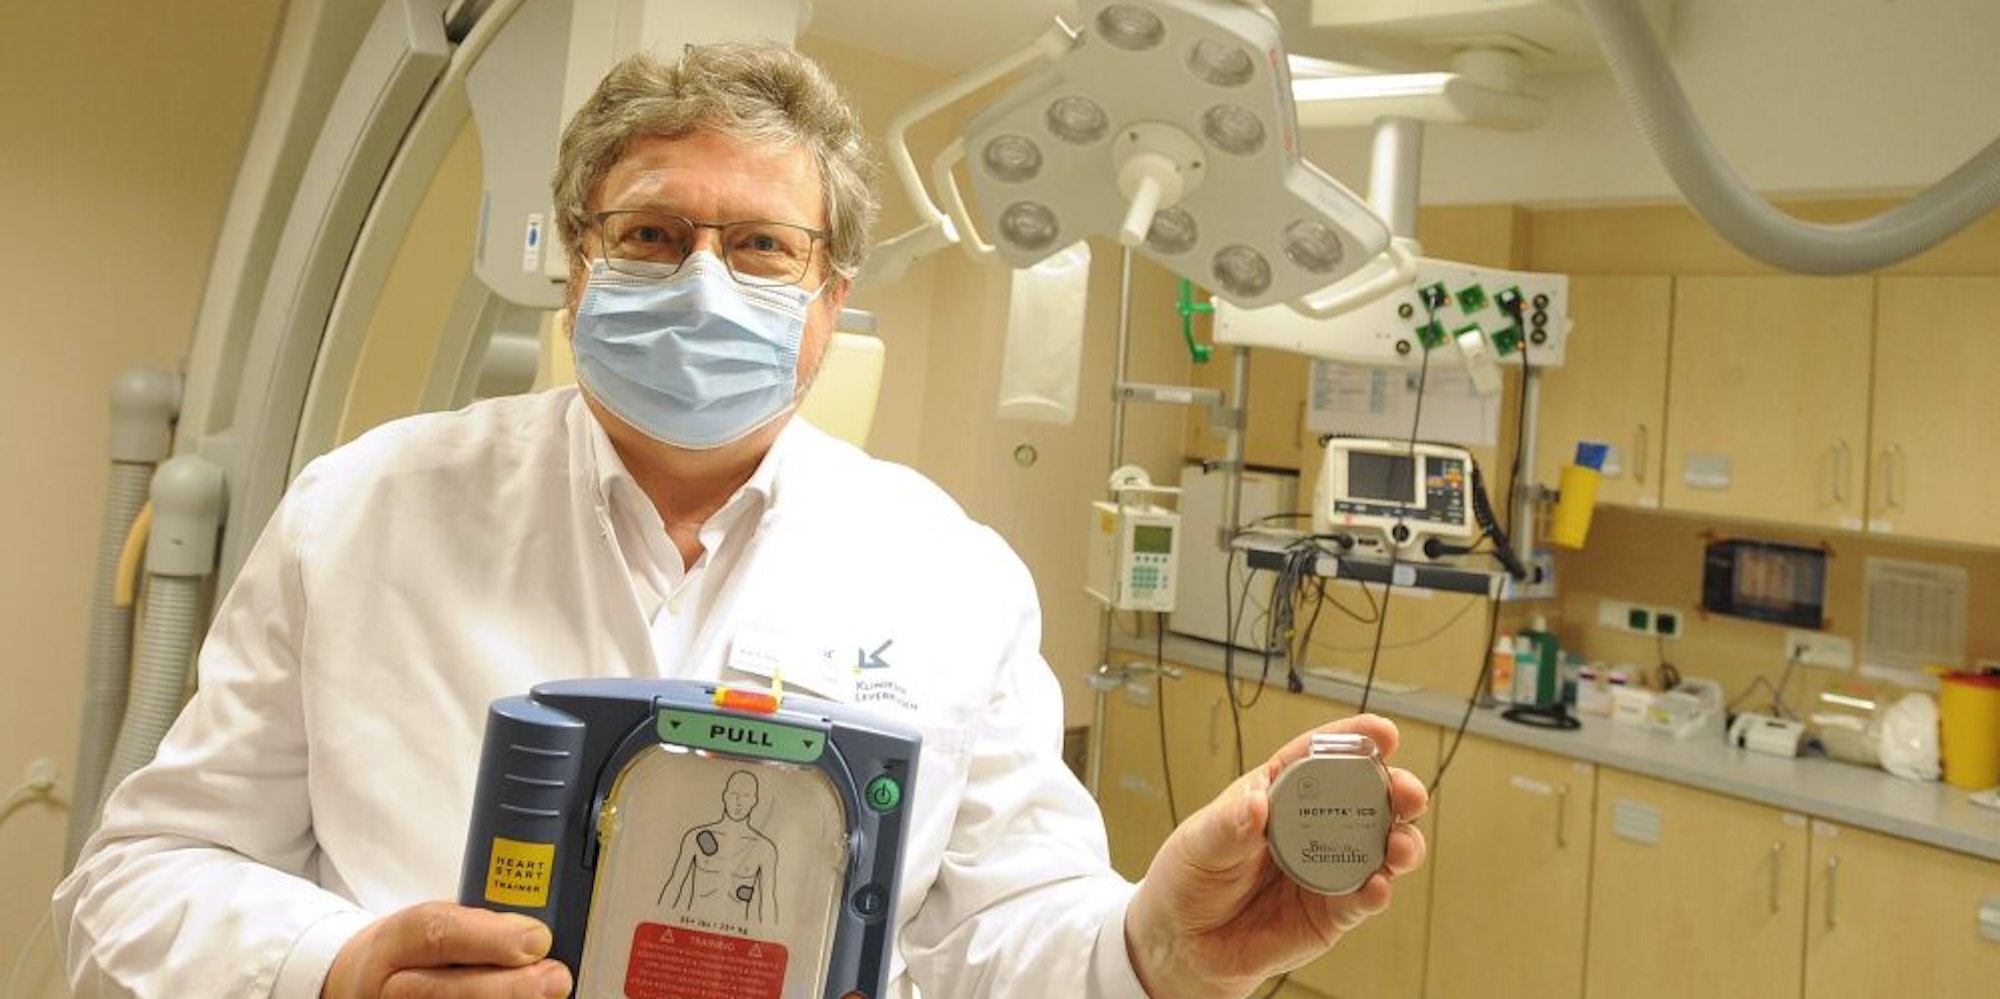 Defibrillator in groß und in klein: Peter Schwimmbeck, Chef der Kardiologie am Klinikum, kennt sich mit beiden Geräten aus.